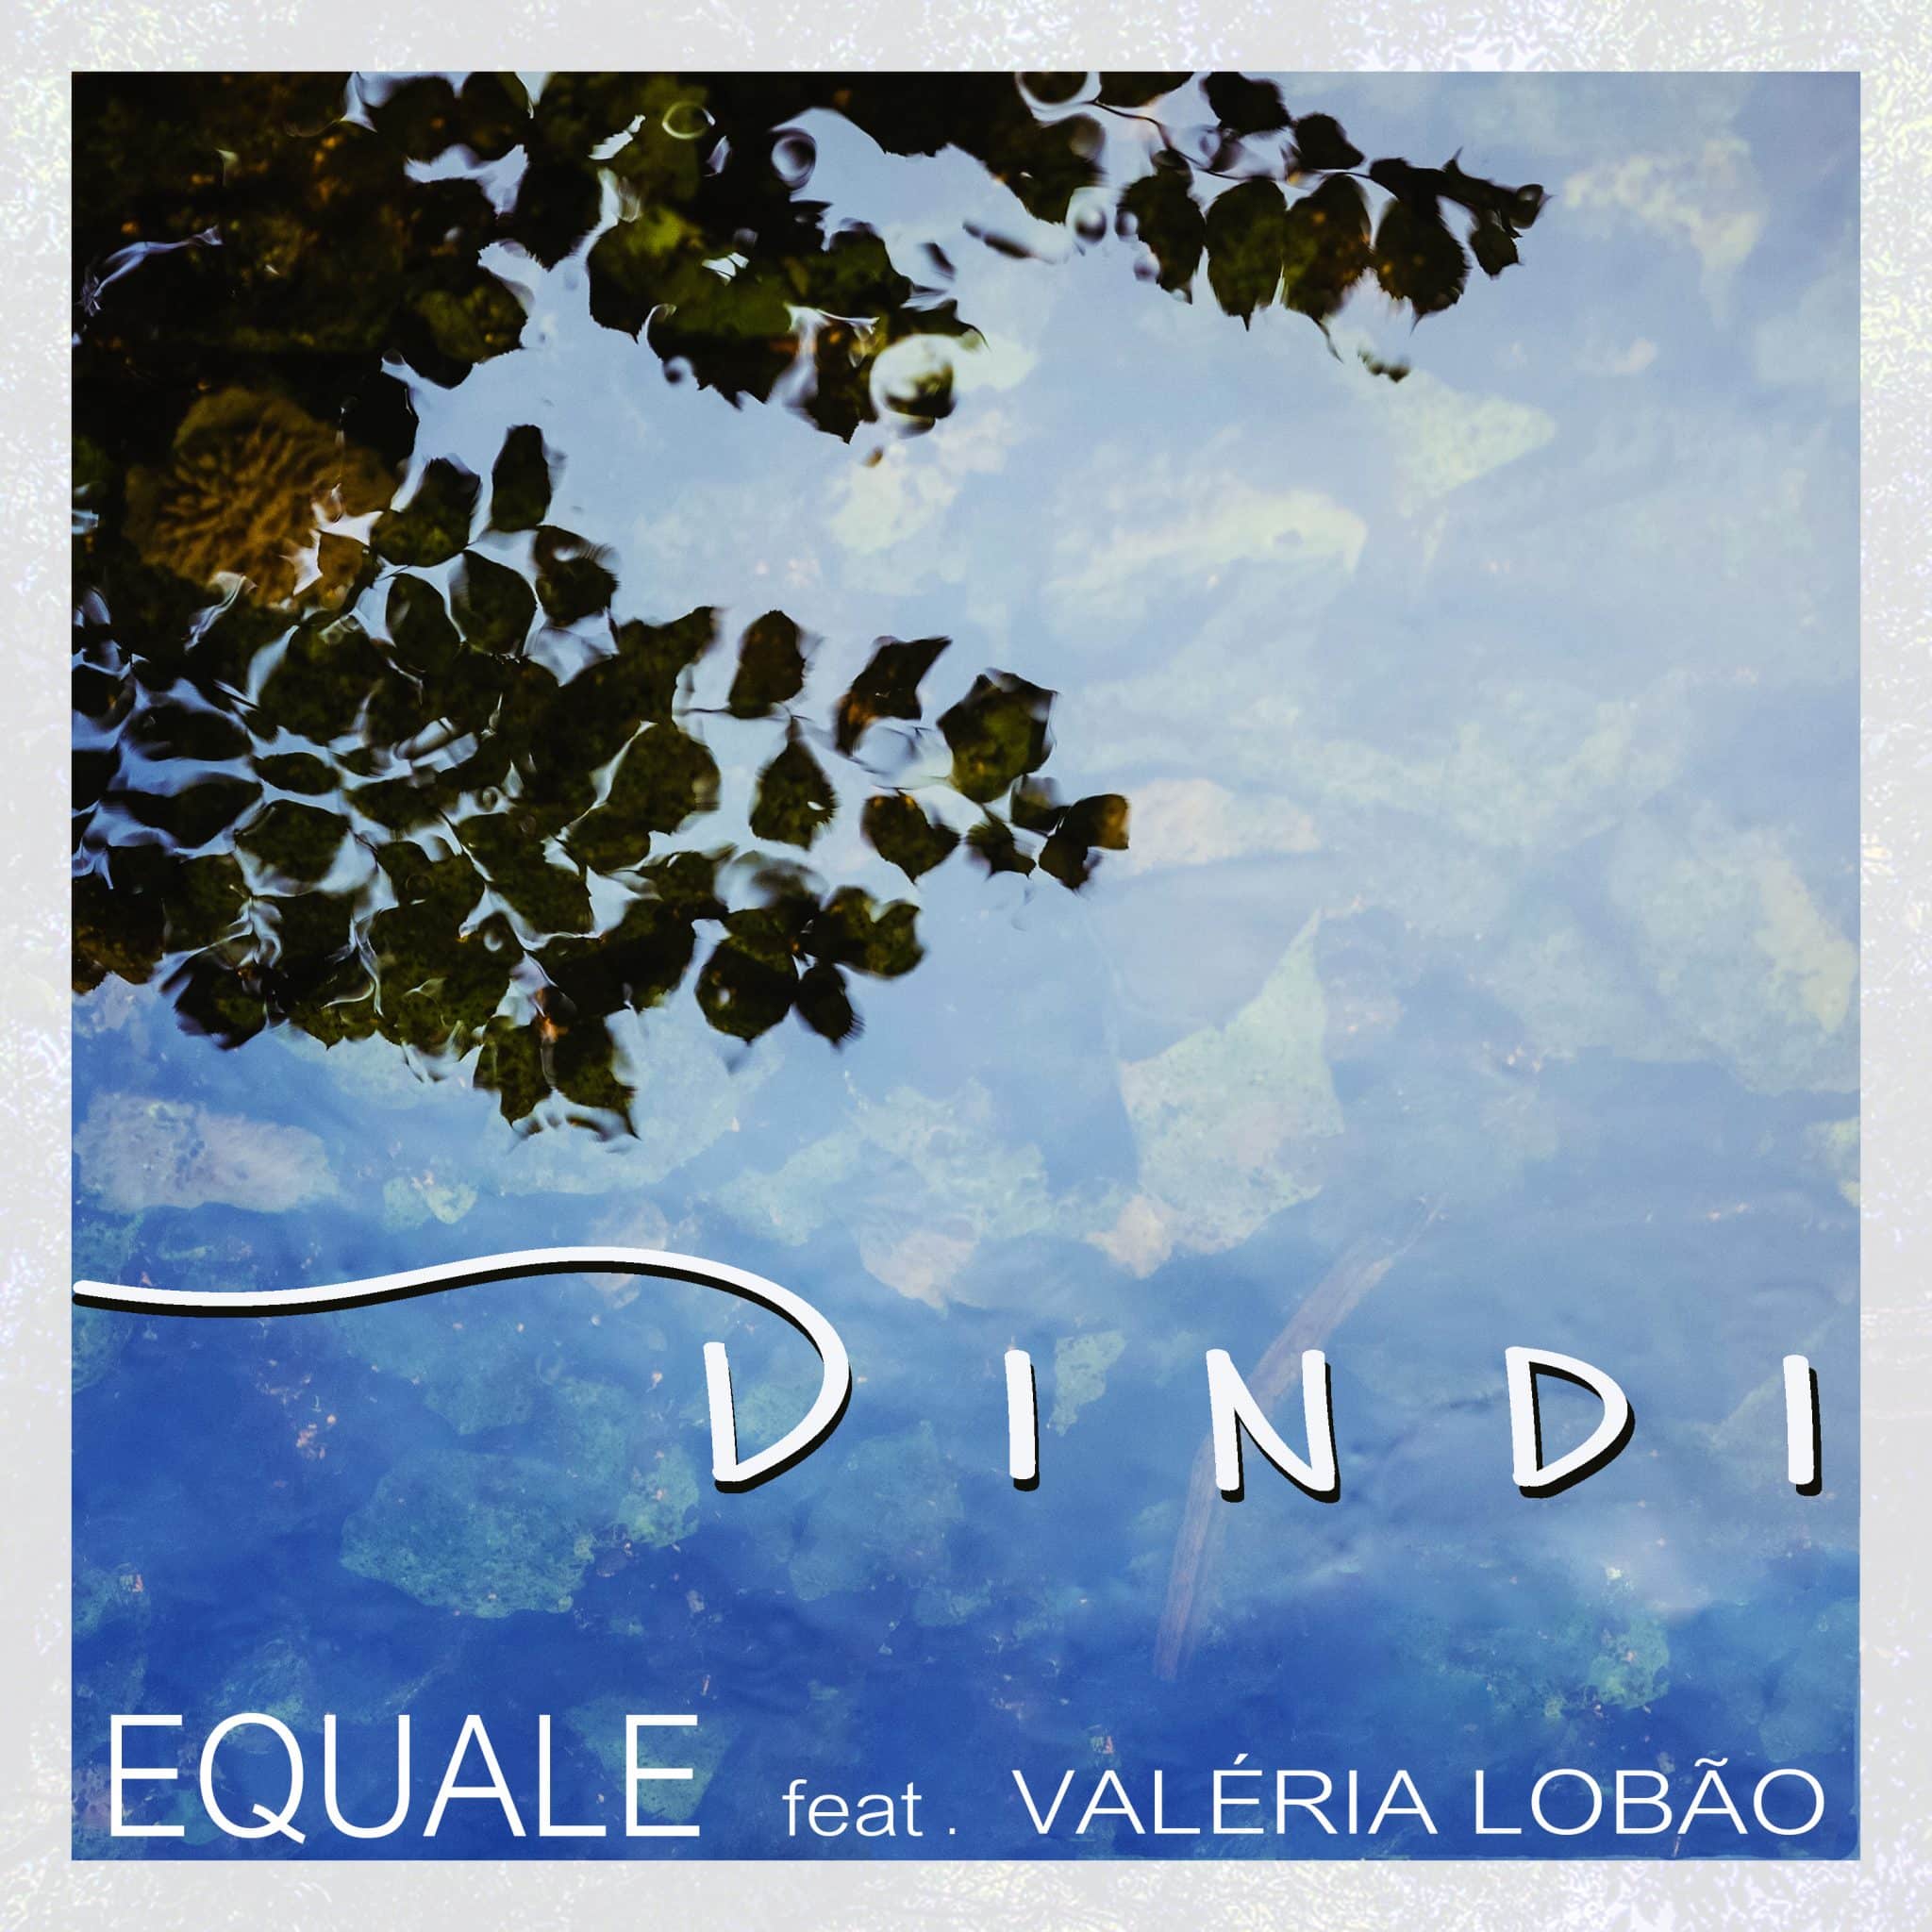 revistaprosaversoearte.com - Grupo vocal Equale lança o single 'Dindi', celebrando Tom jobim